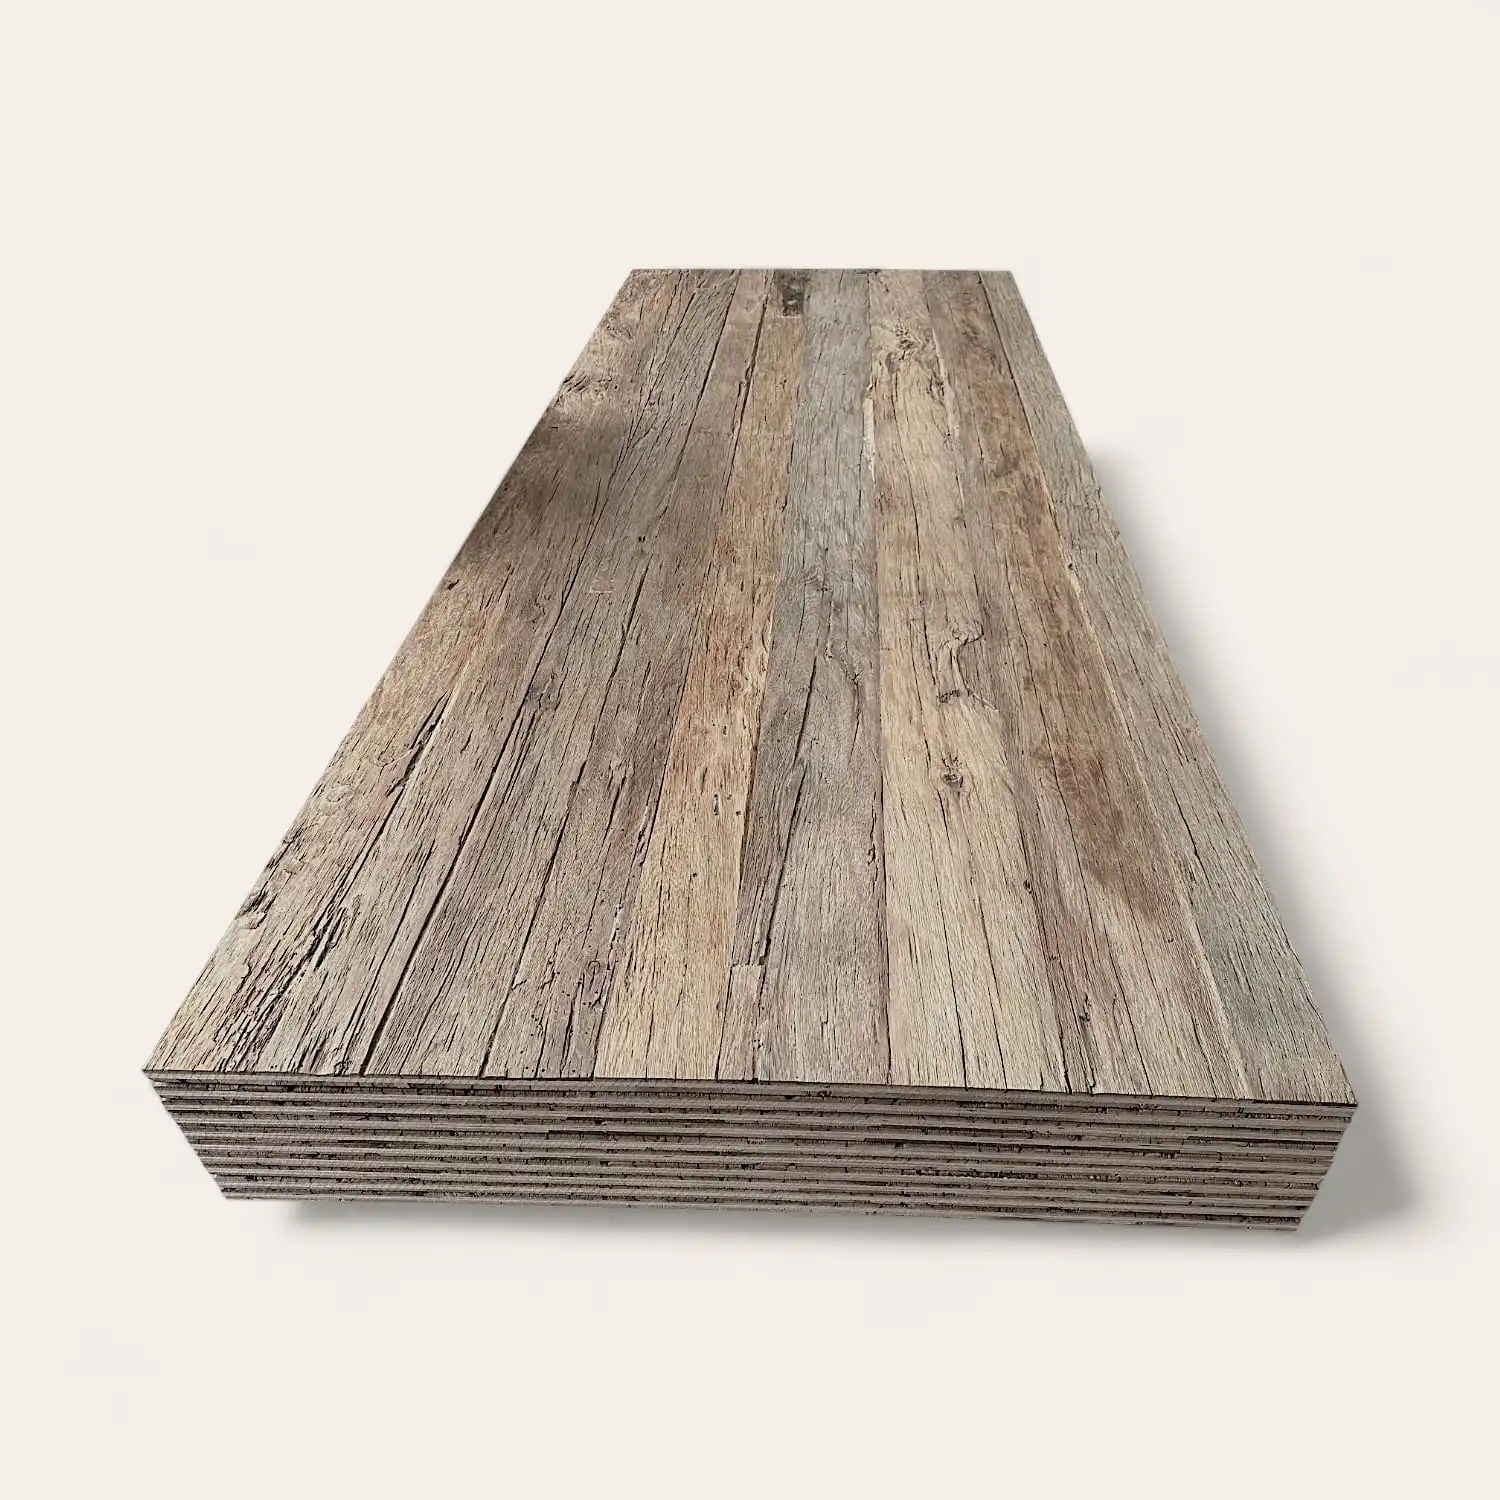  Une pile de planches de bois patinées disposées en perspective sur un fond blanc. 